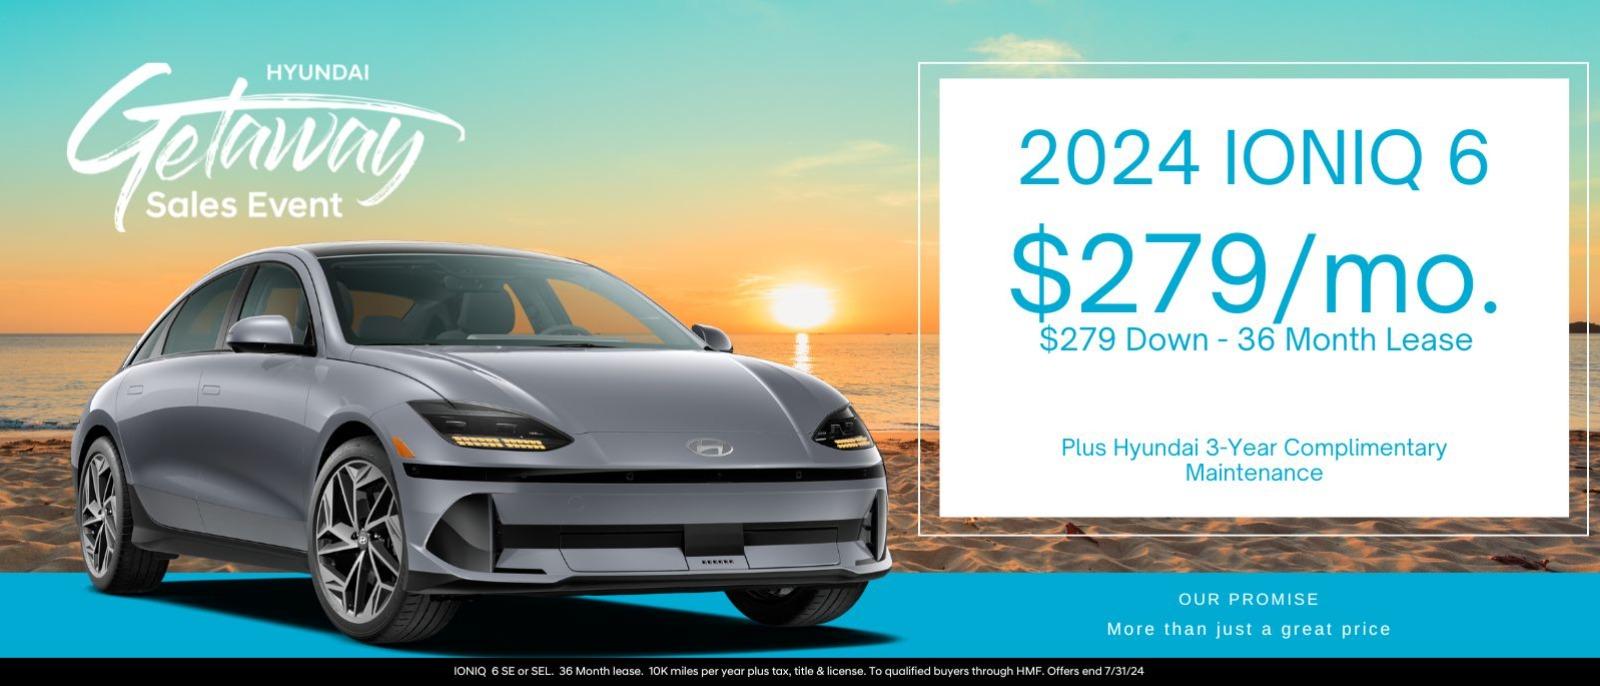 2024 Ioniq 6 
$279/mo. 
$279 down - 36 month lease
Plus Hyundai 3-Year Complimentary Maintenance